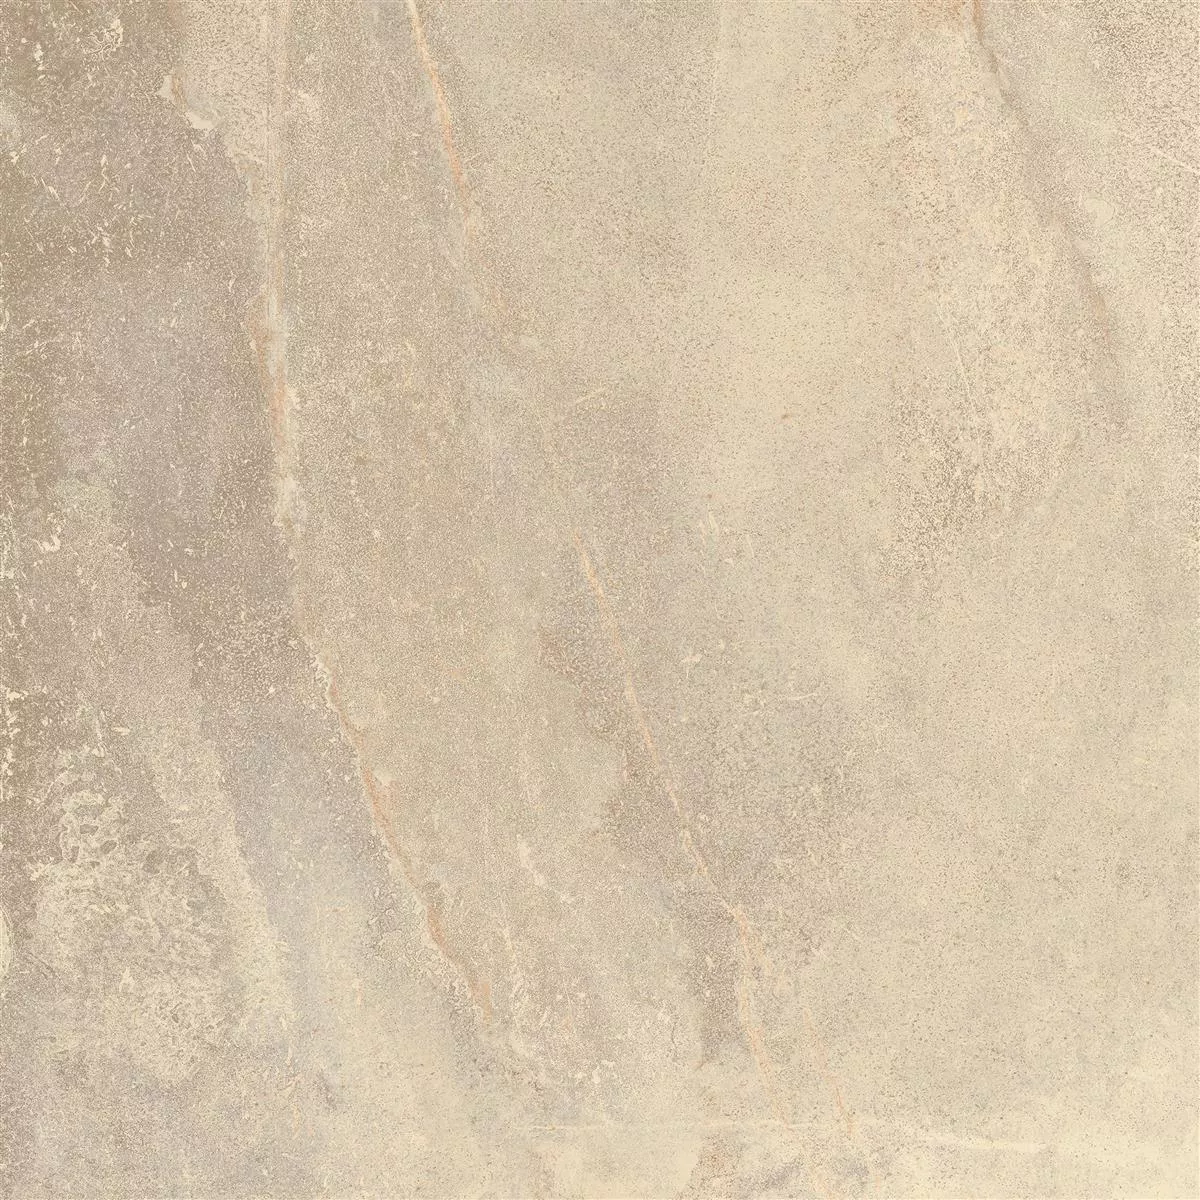 Podlahové Dlaždice Detmold Vzhled Přírodního Kamene 60x60cm Béžová